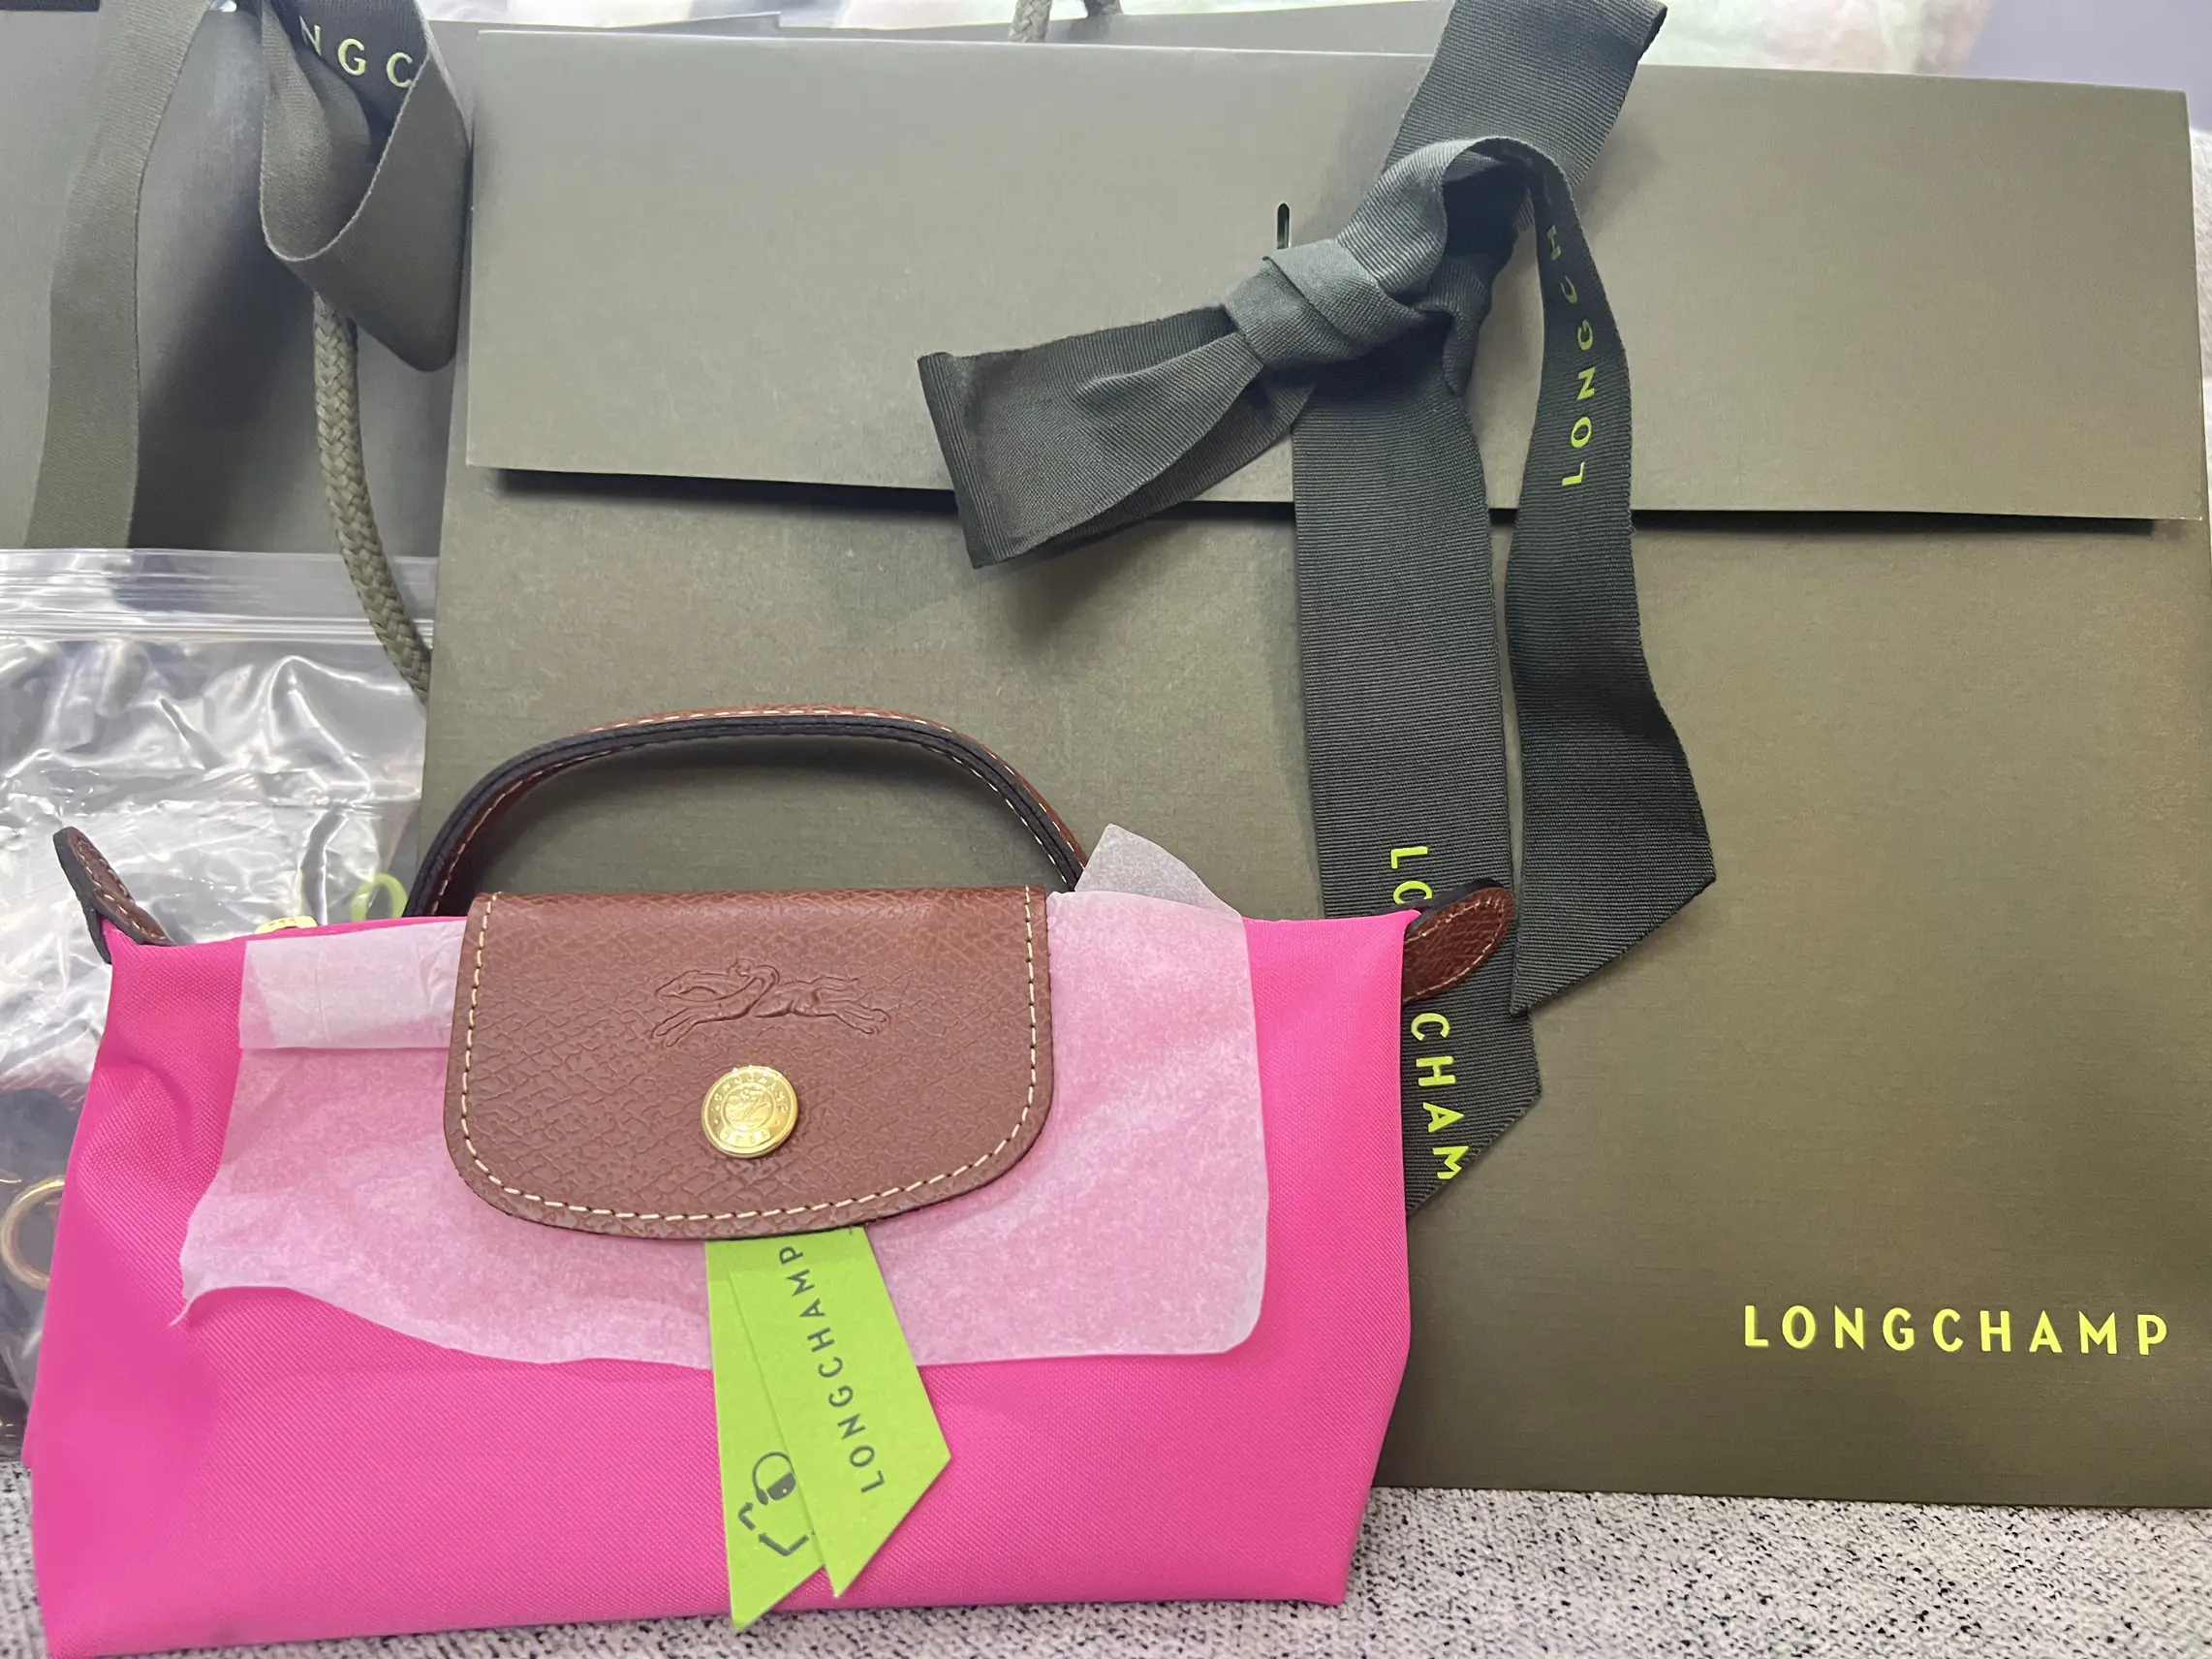 Hi! Here's a quick what's in my bag, I feel like this Longchamp LE PLI